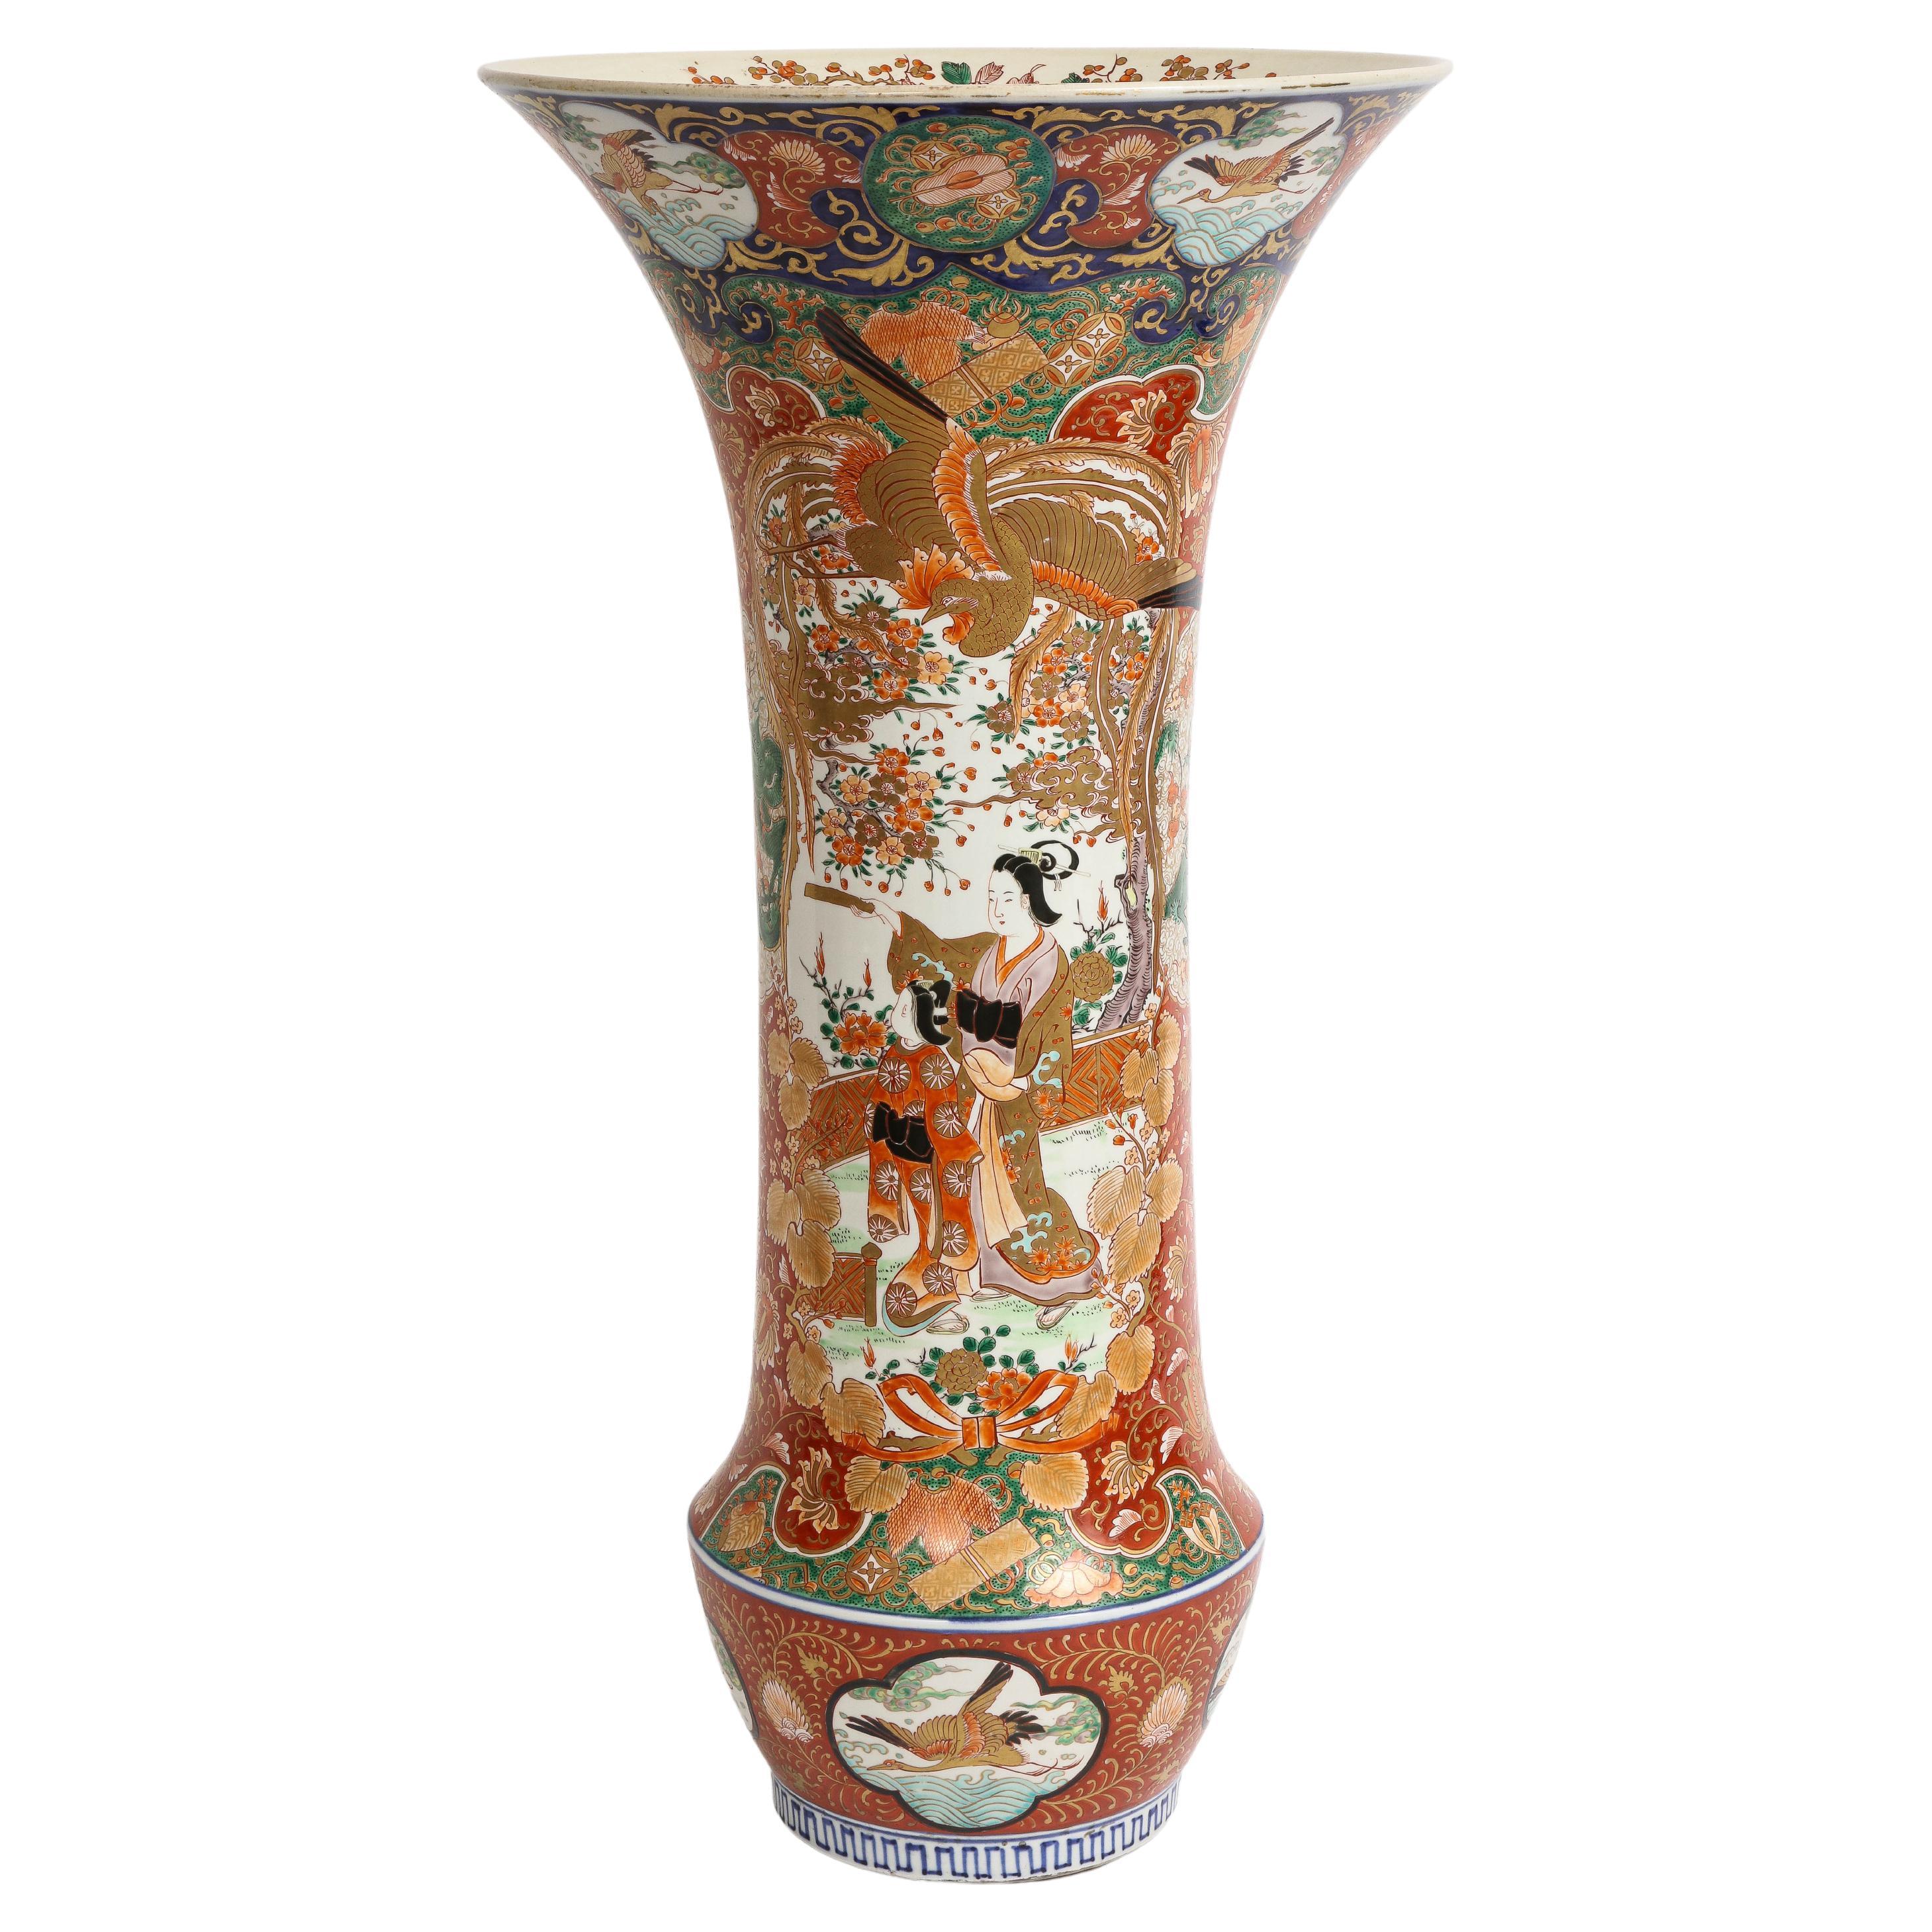  Palace Size Meiji Period Japanese Kutani Porcelain Vase, 1880